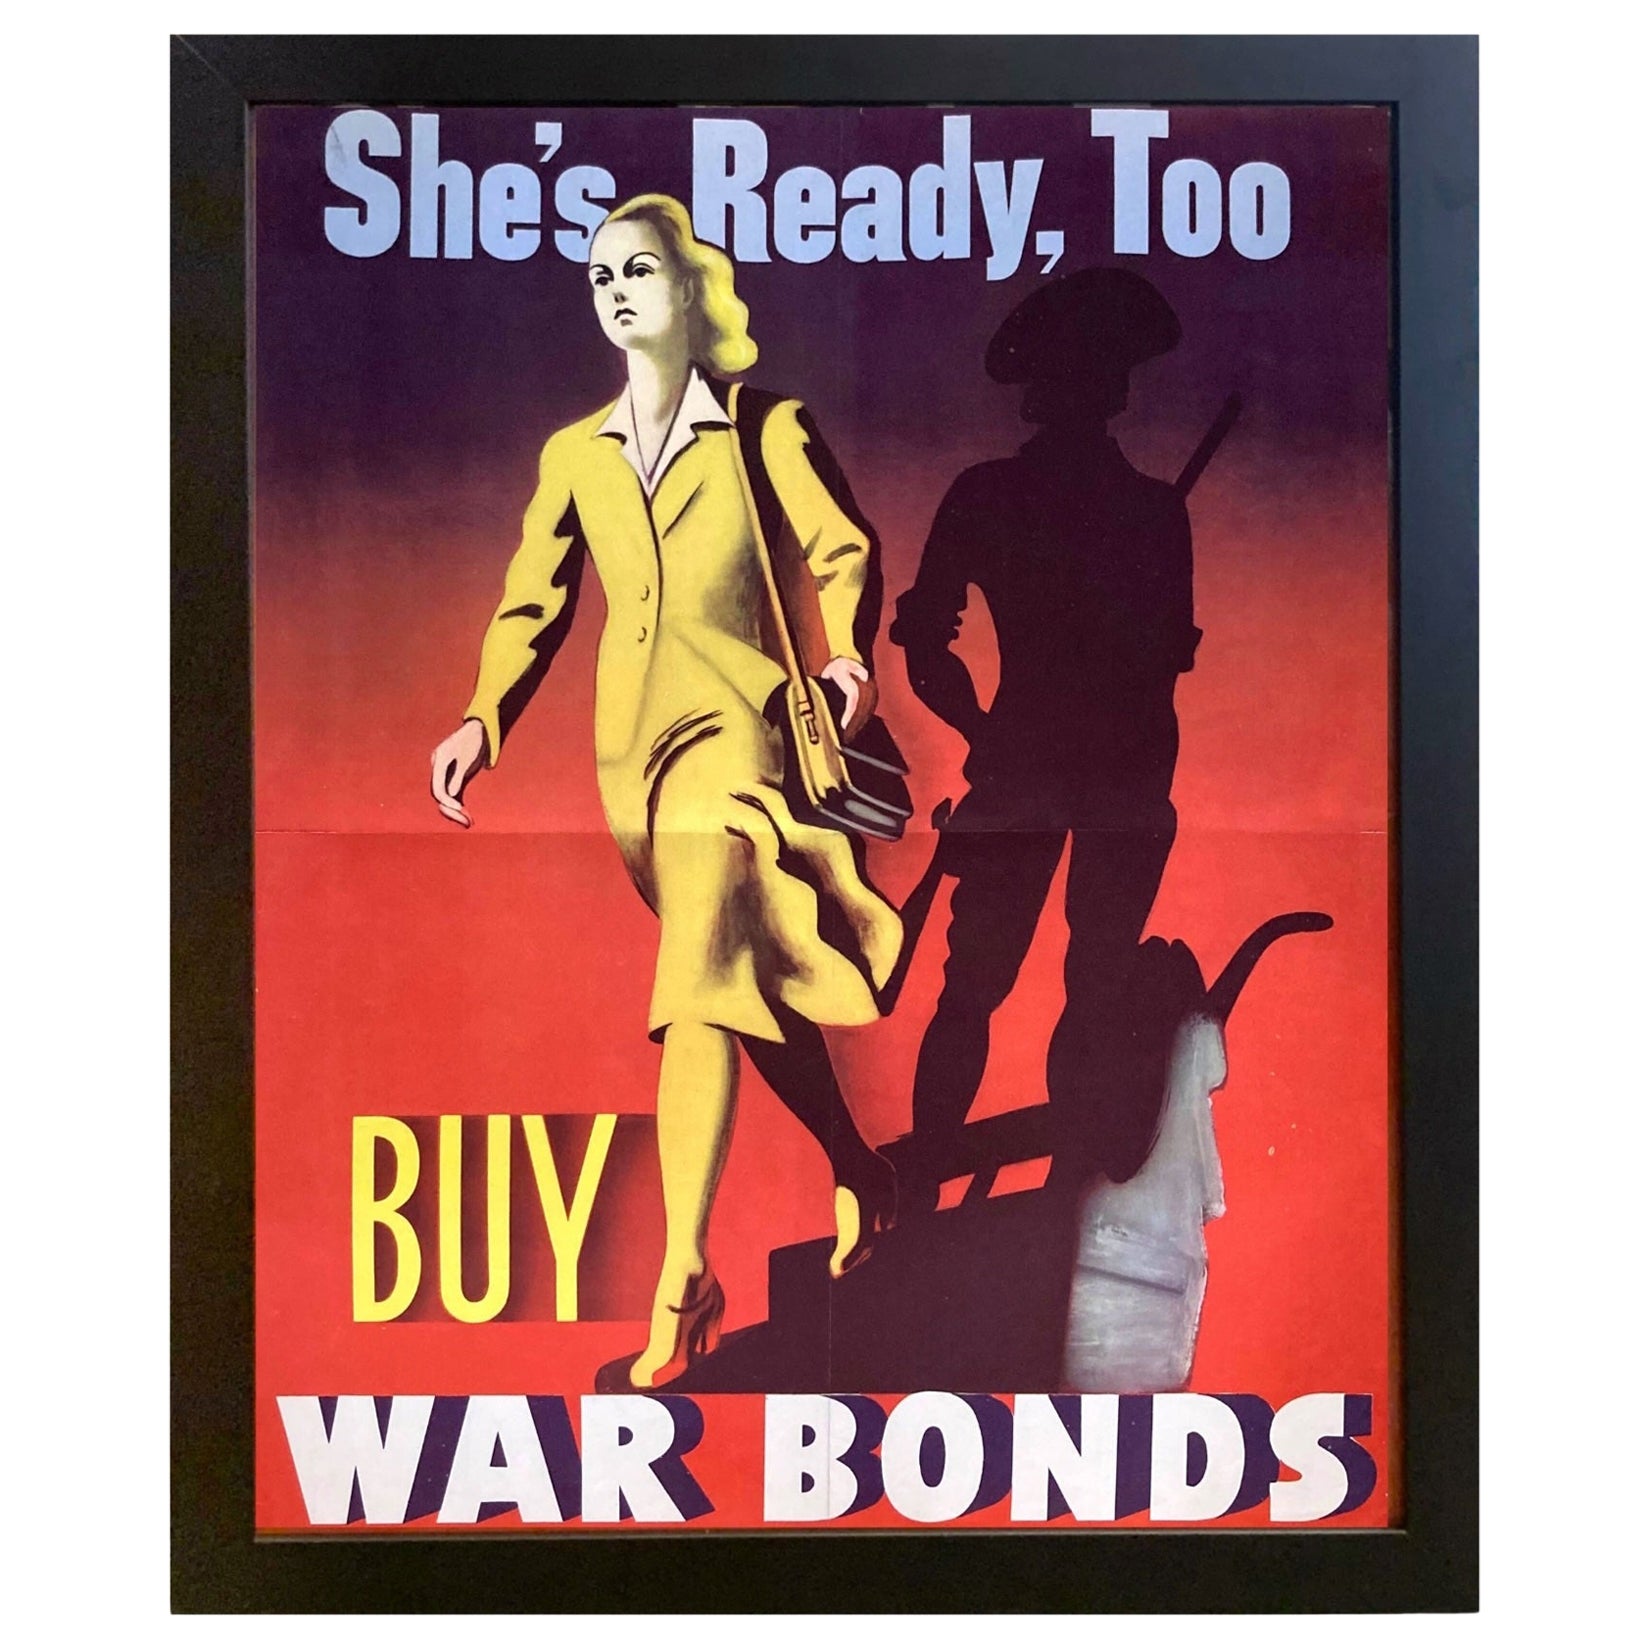 "Elle est également prête. Achetez des obligations de guerre" The Vintage WWII Bonds Poster, 1942